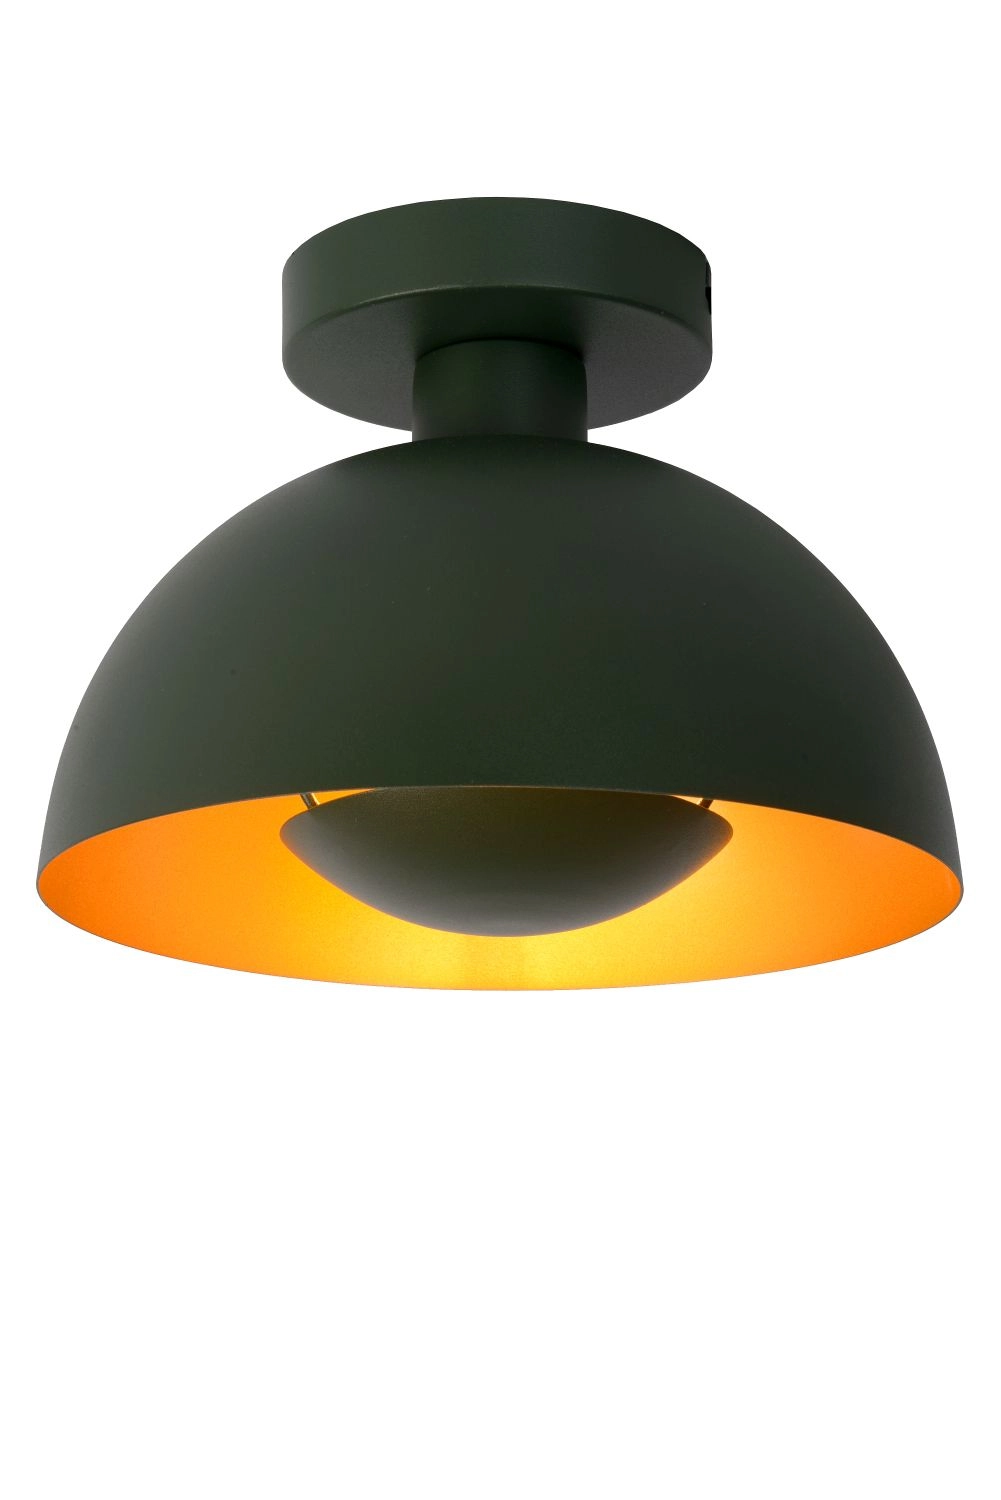 LU 45196/01/33 Lucide SIEMON - Flush ceiling light - Ø 25 cm - 1xE27 - Green